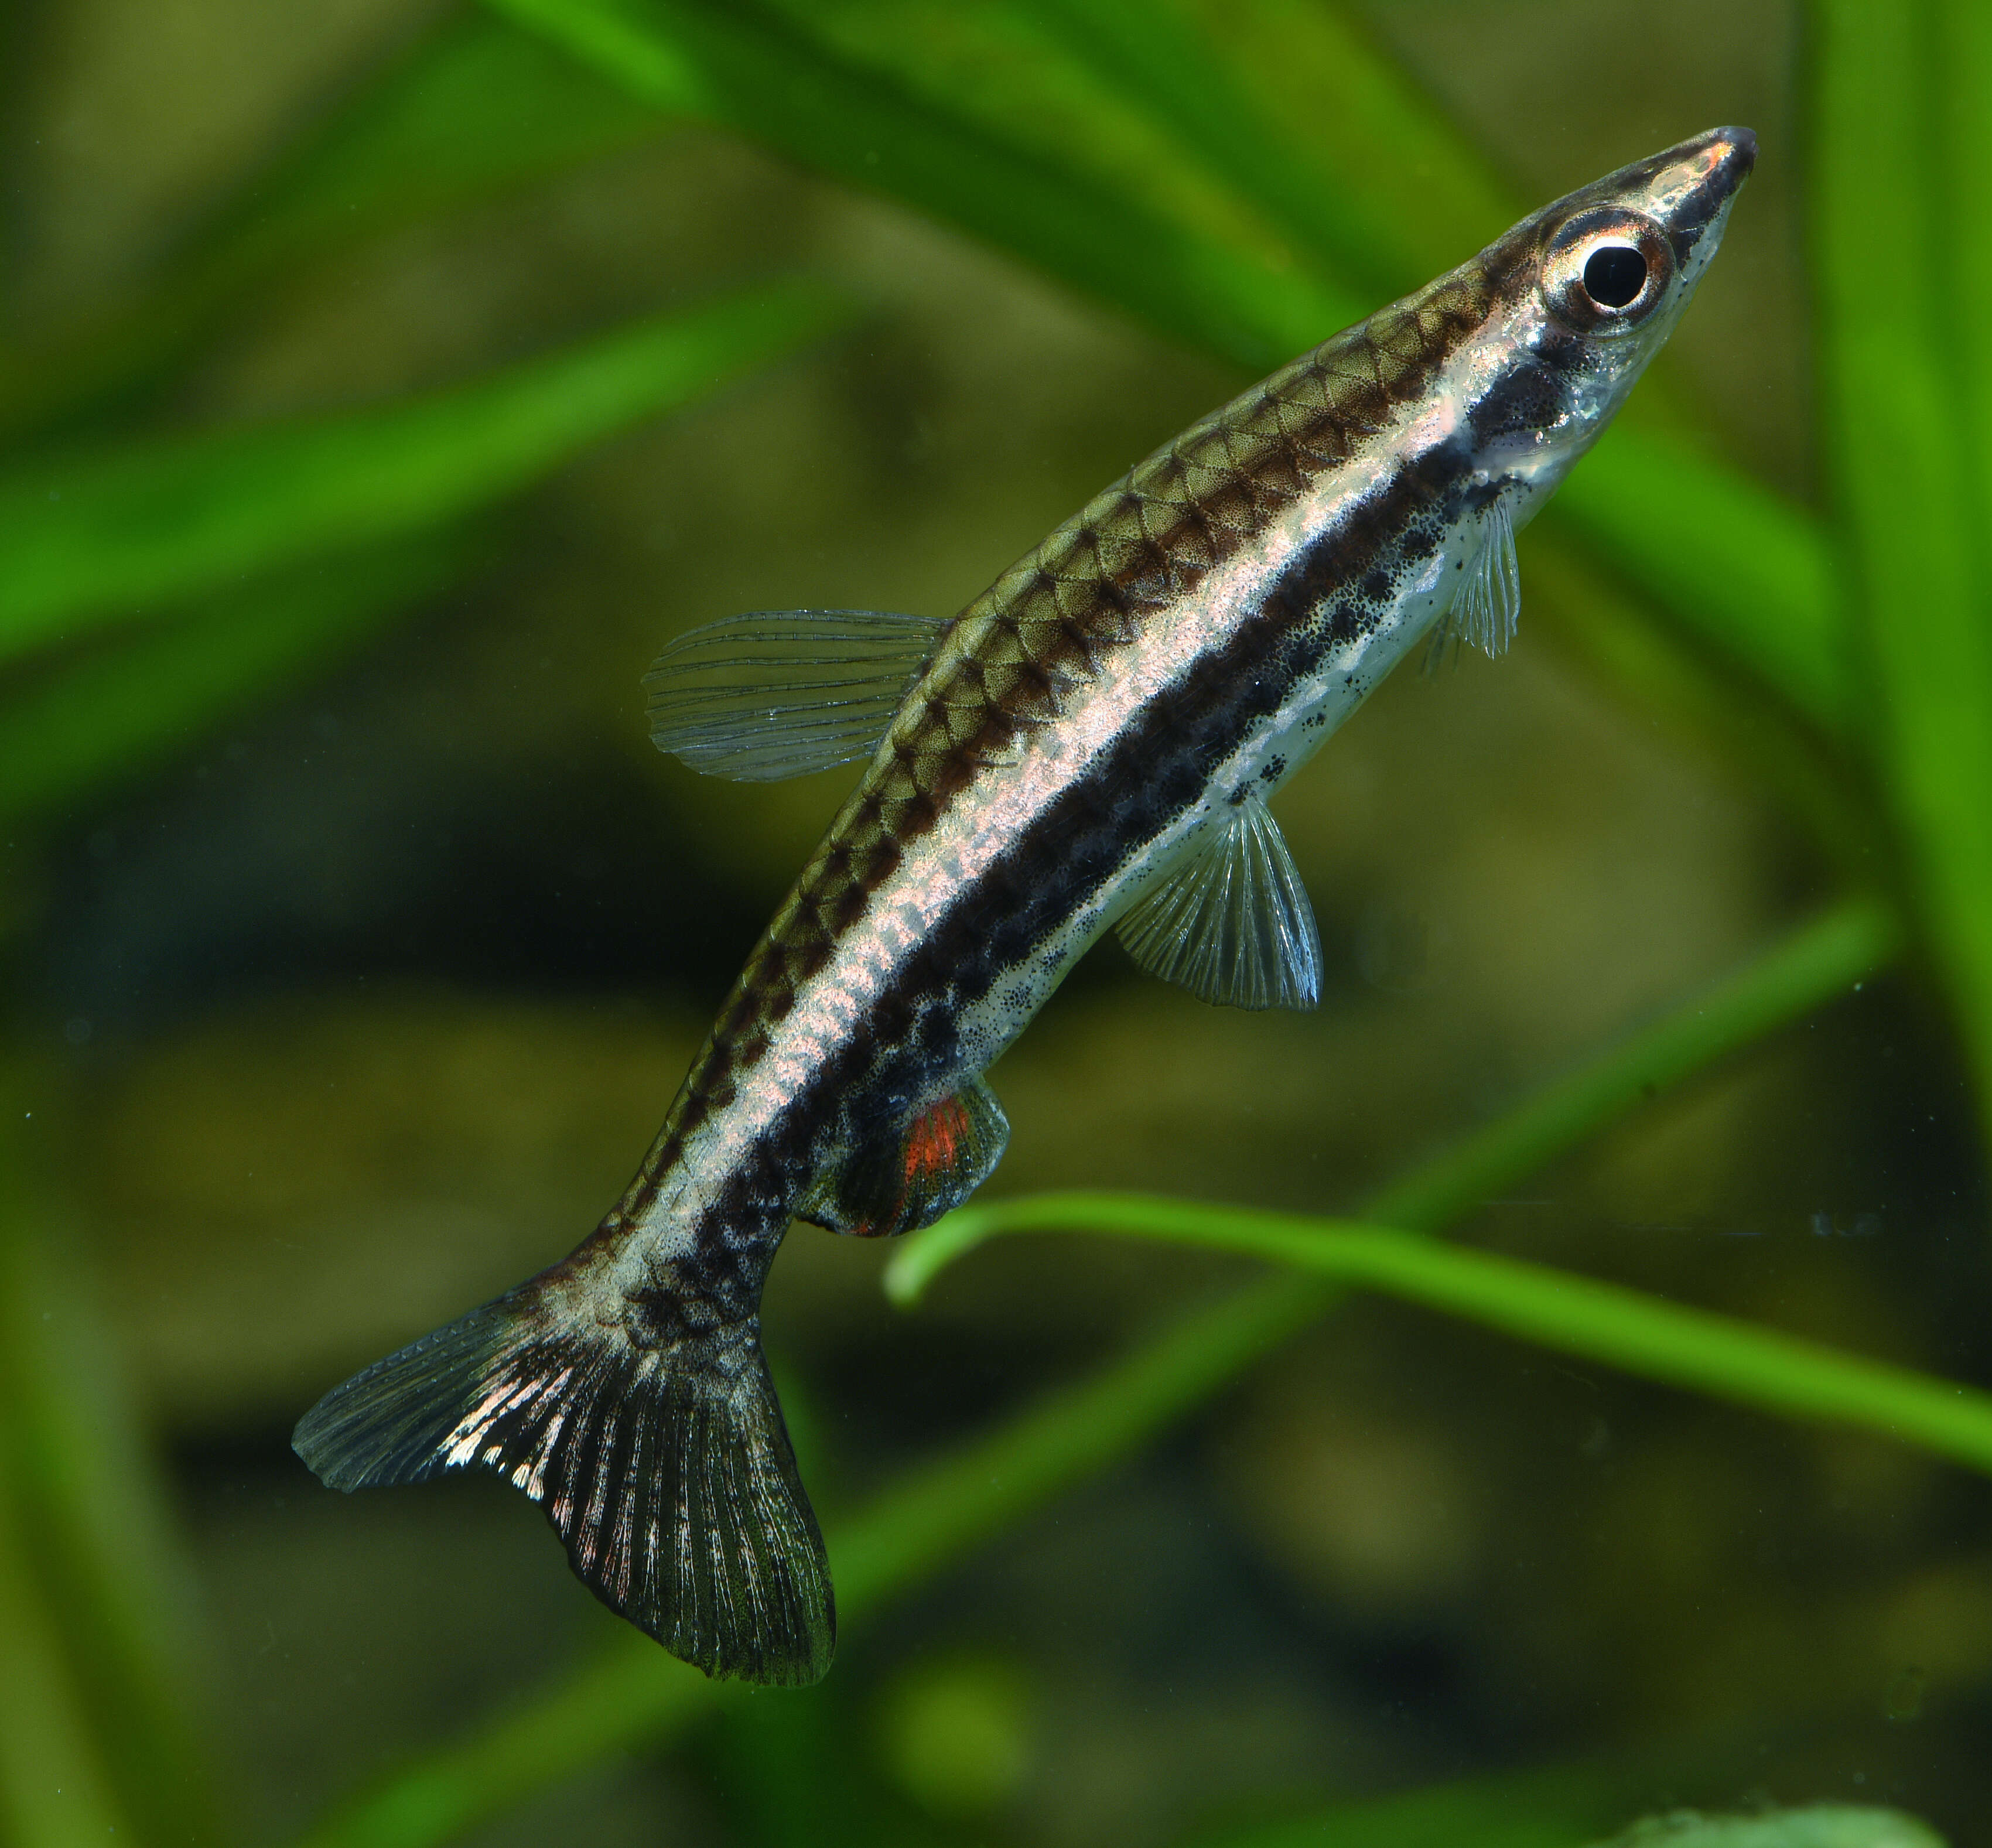 Image of Diptail pencilfish